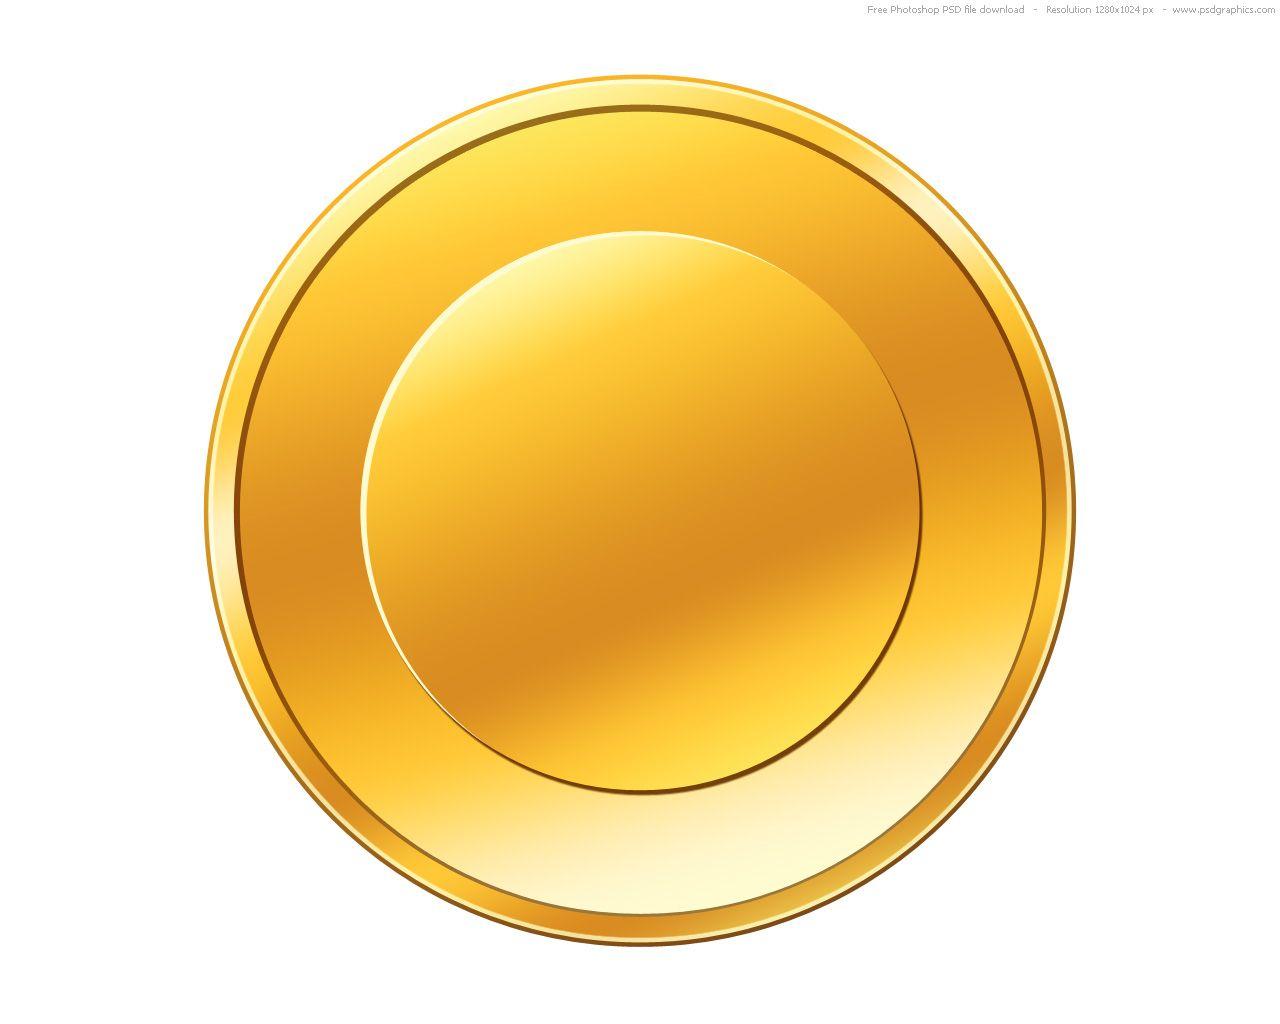 Gold Coin Logo - PSD gold coin icon | PSDGraphics